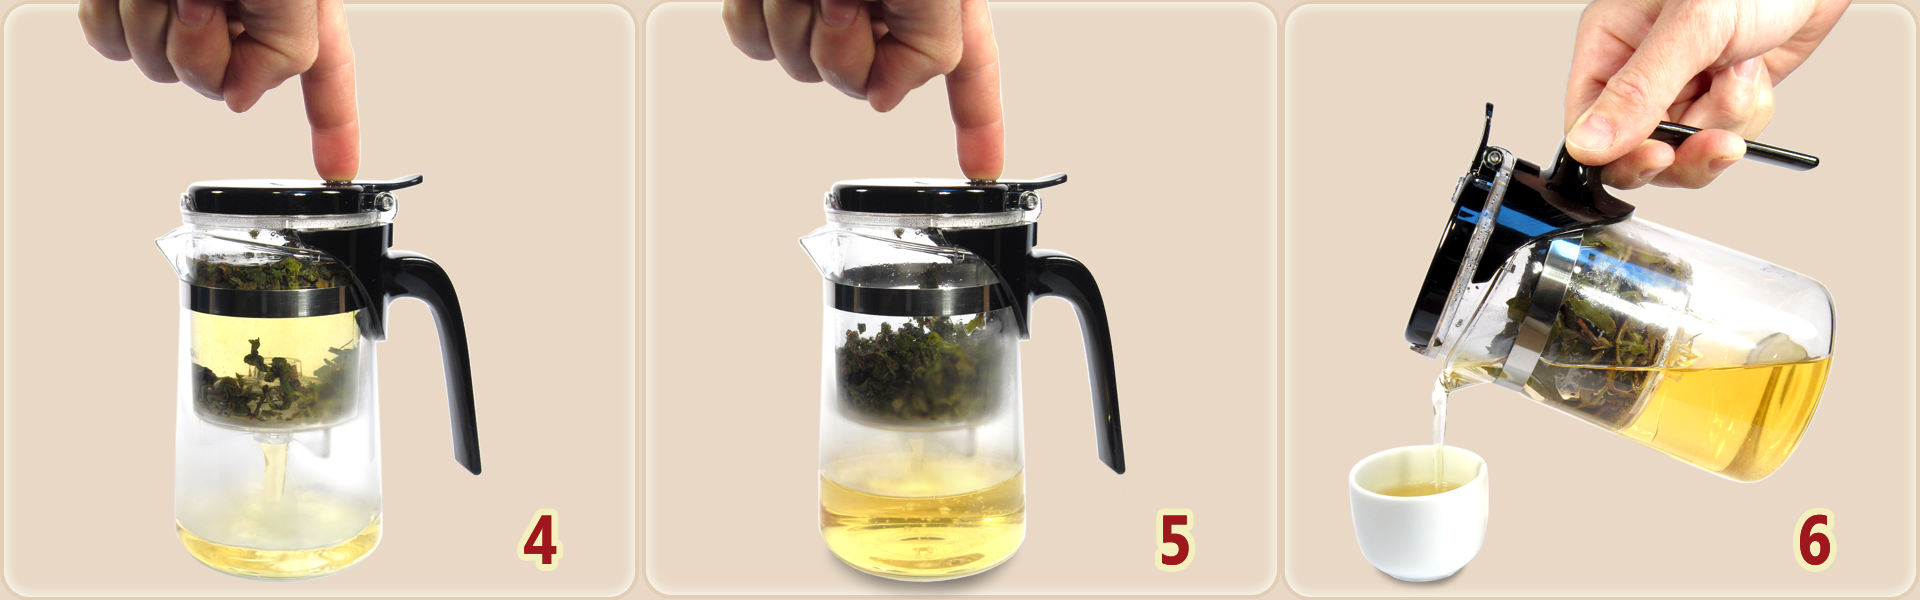 Fonctionnement de la théière avec infuseur : 4. Appuyez sur le bouton pour faire couler le thé... 5. ...jusqu'à ce que l'infuseur soit vide. 6. Servez le thé.